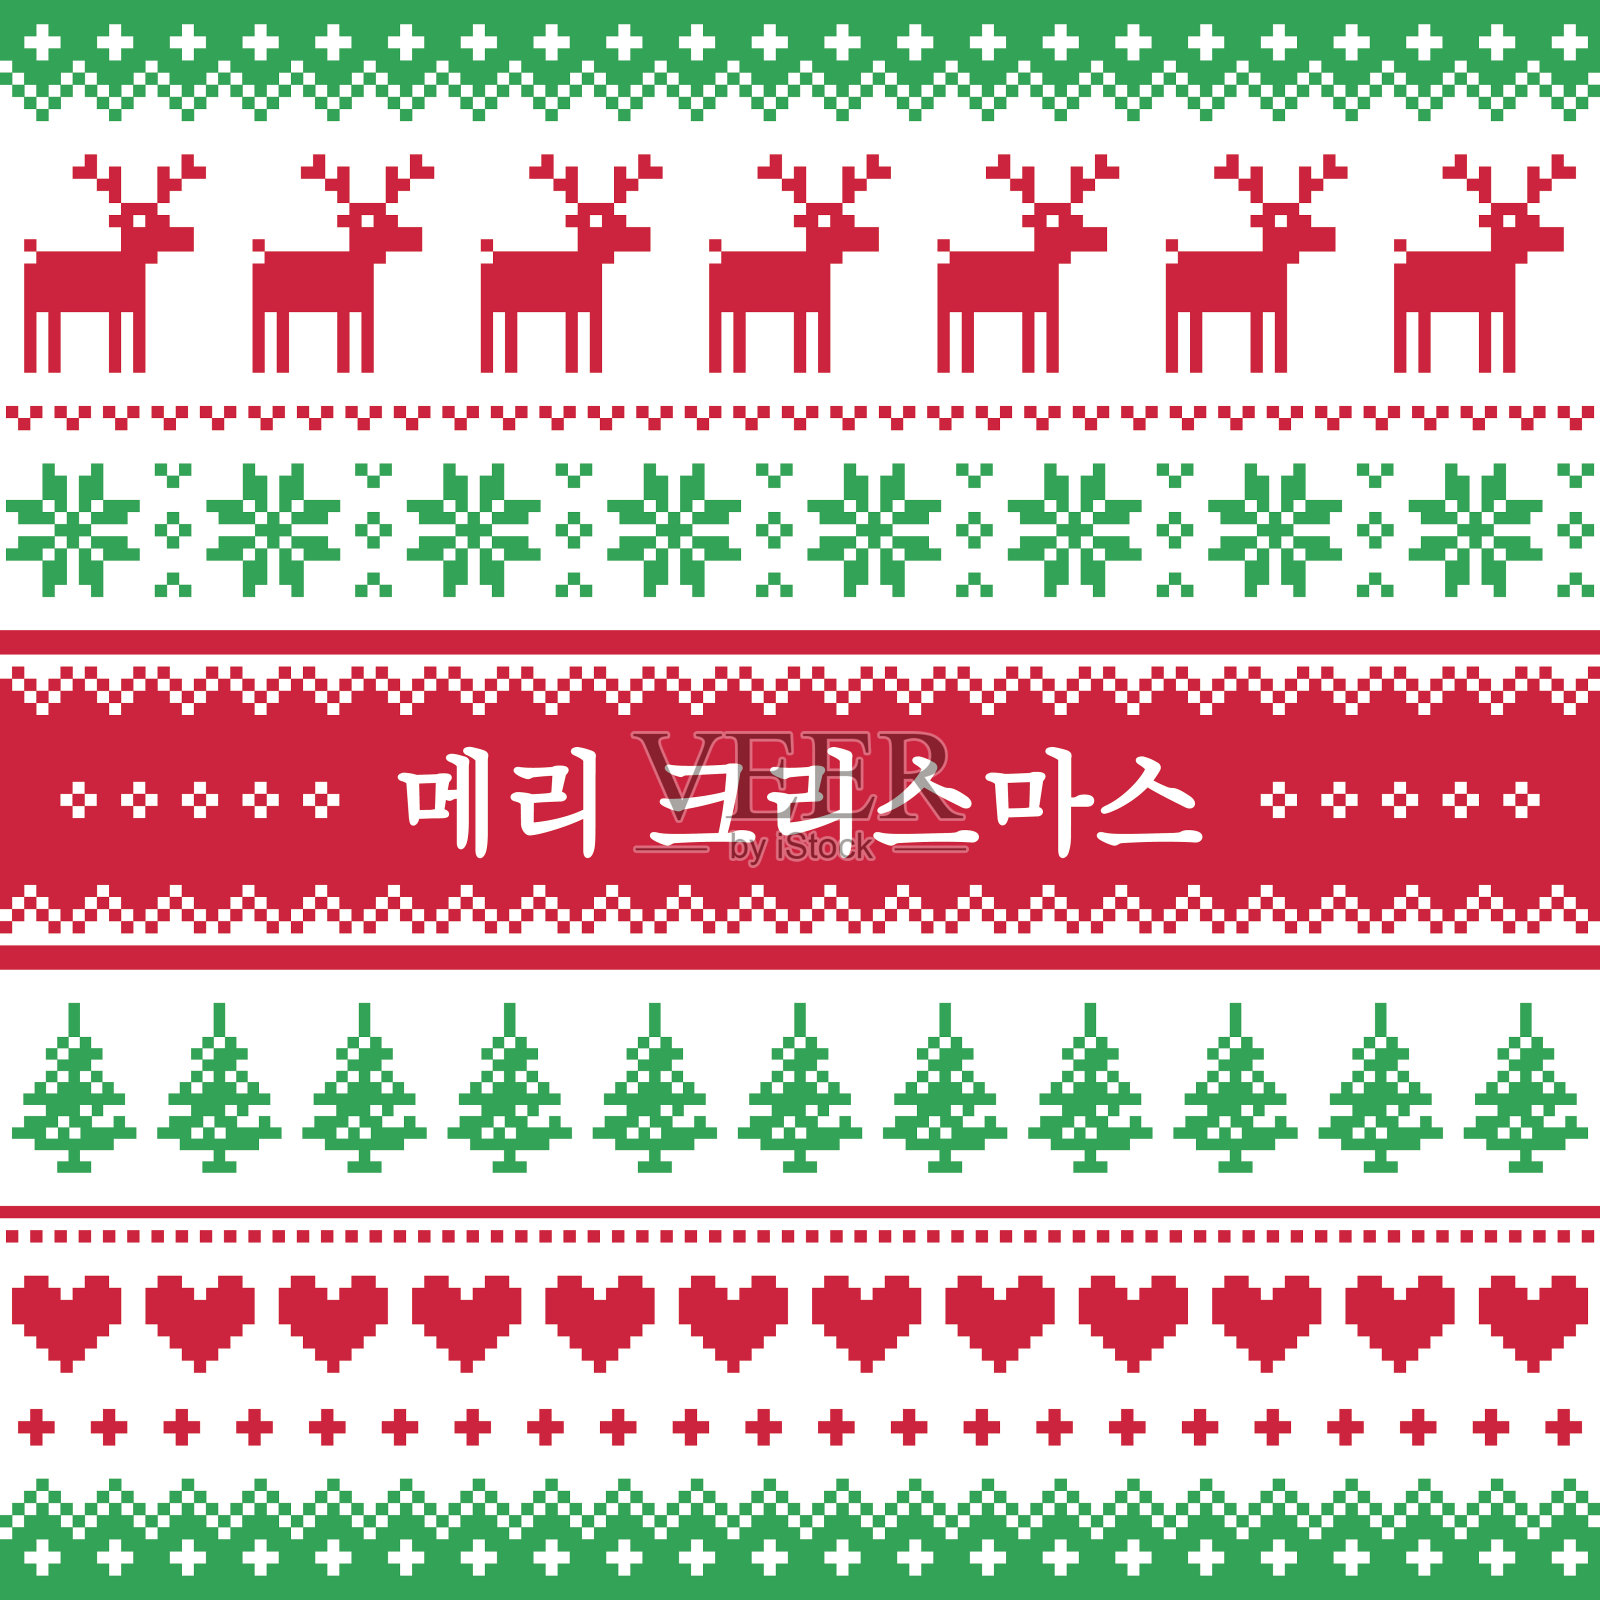 韩语圣诞贺卡-北欧或斯堪的纳维亚风格(Meri Krismas)插画图片素材